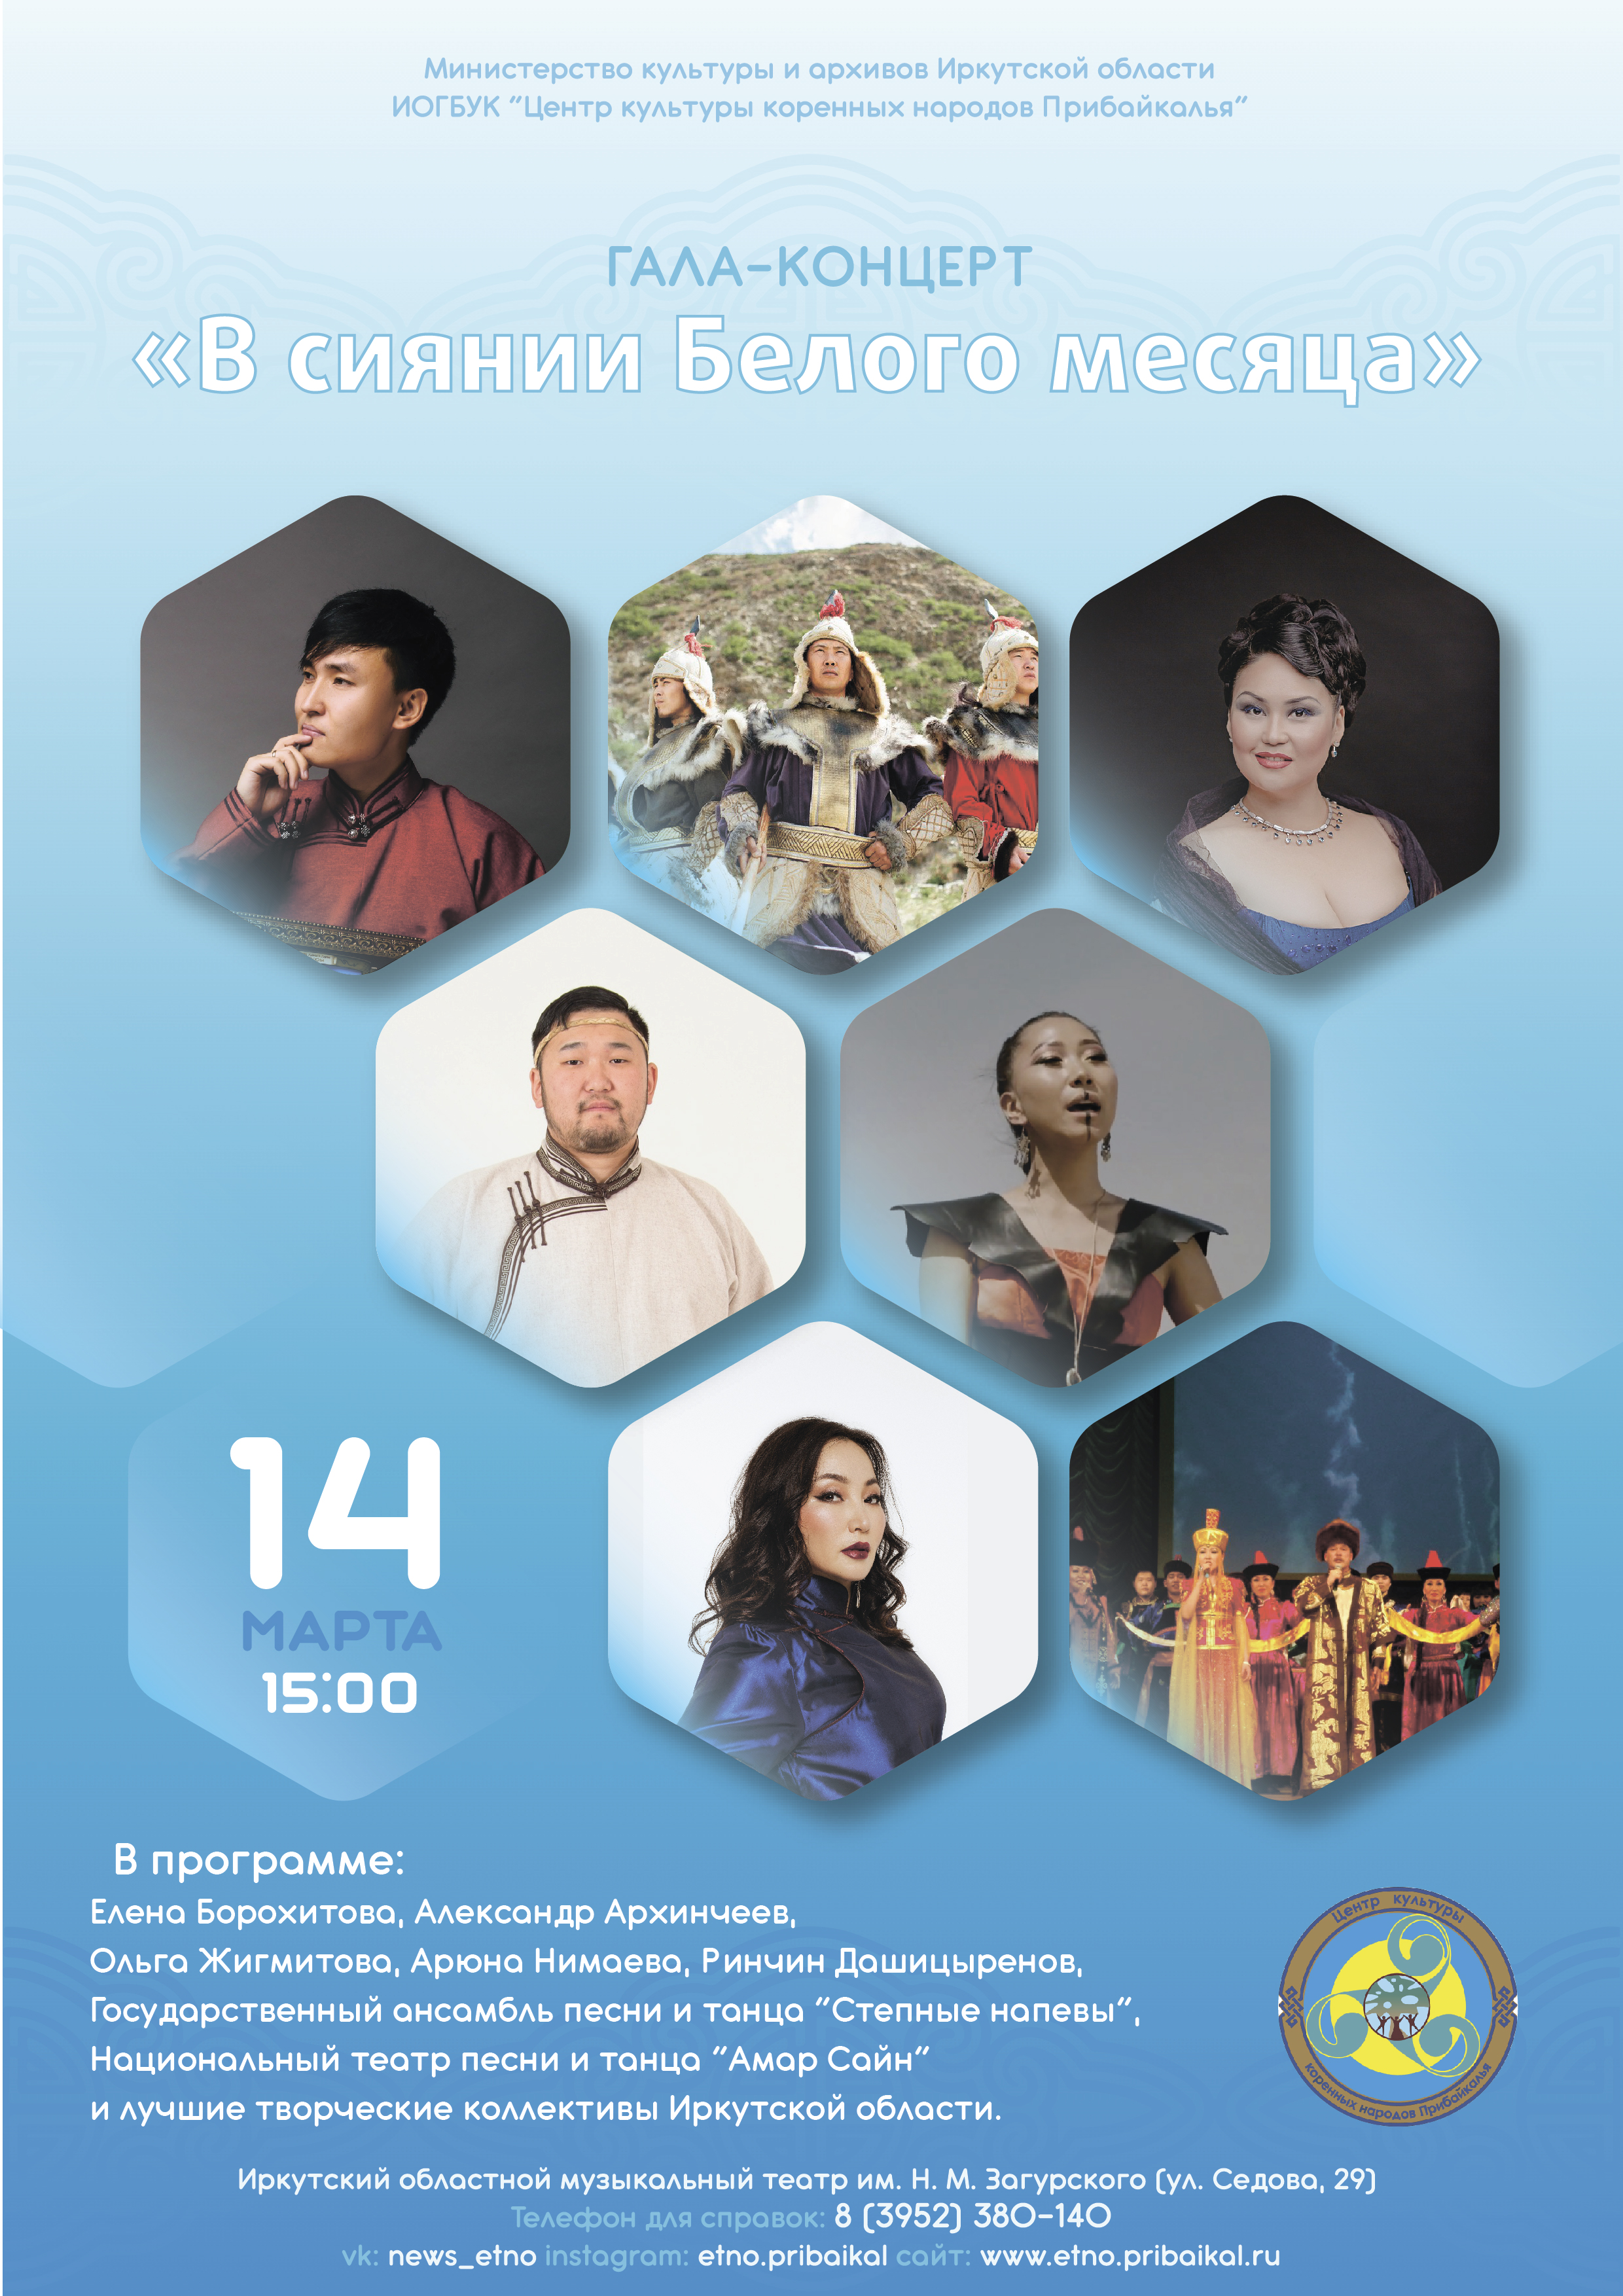 Гала-концерт «В сиянии Белого месяца» в Музыкальном театре имени Н.М. Загурского